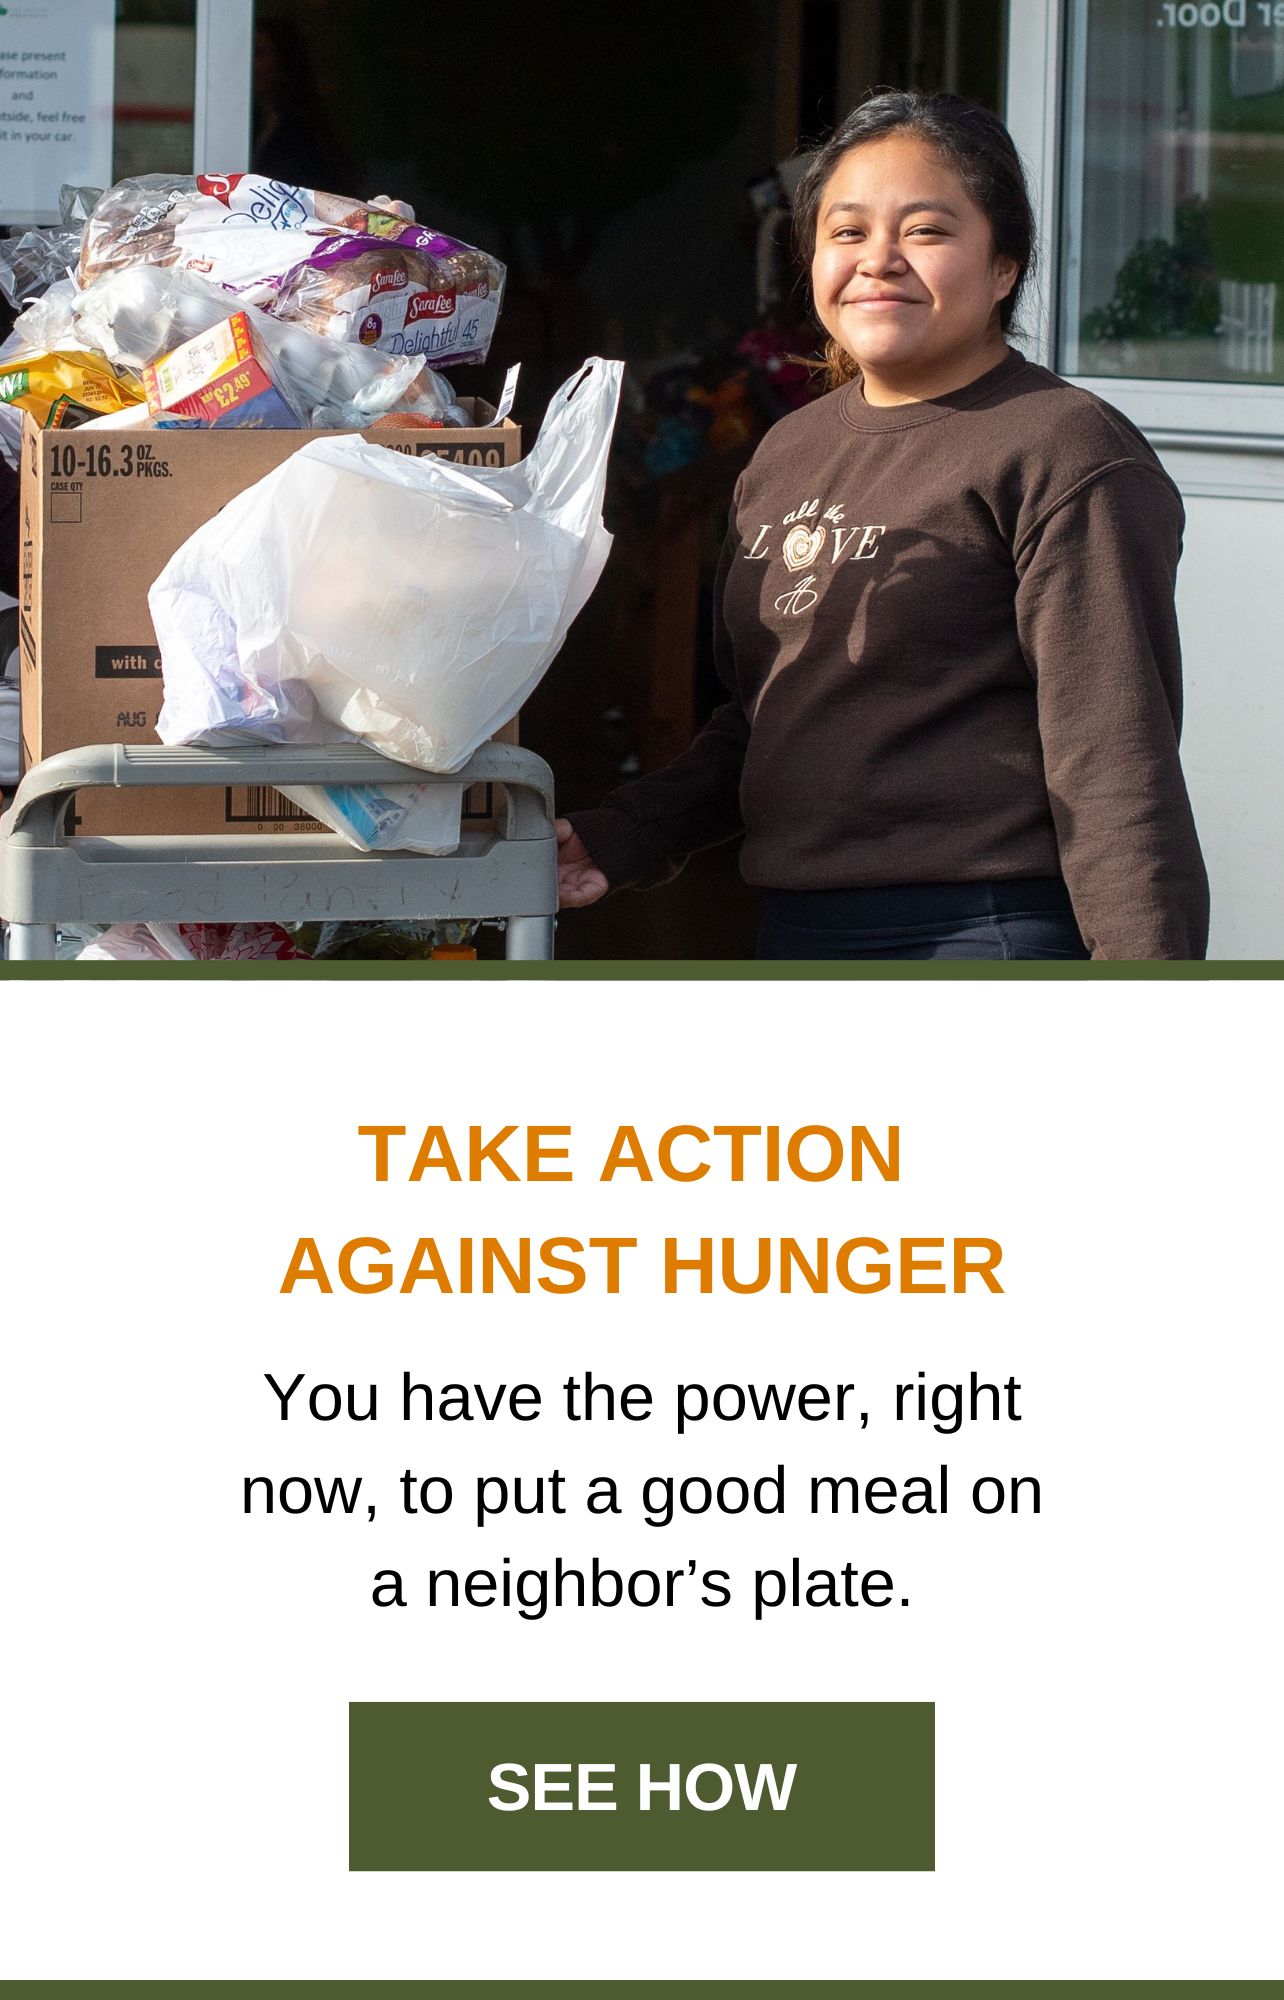 Actúa contra el hambre. Tienes el poder, ahora mismo, de poner una comida en el plato de un vecino. Ver cómo.